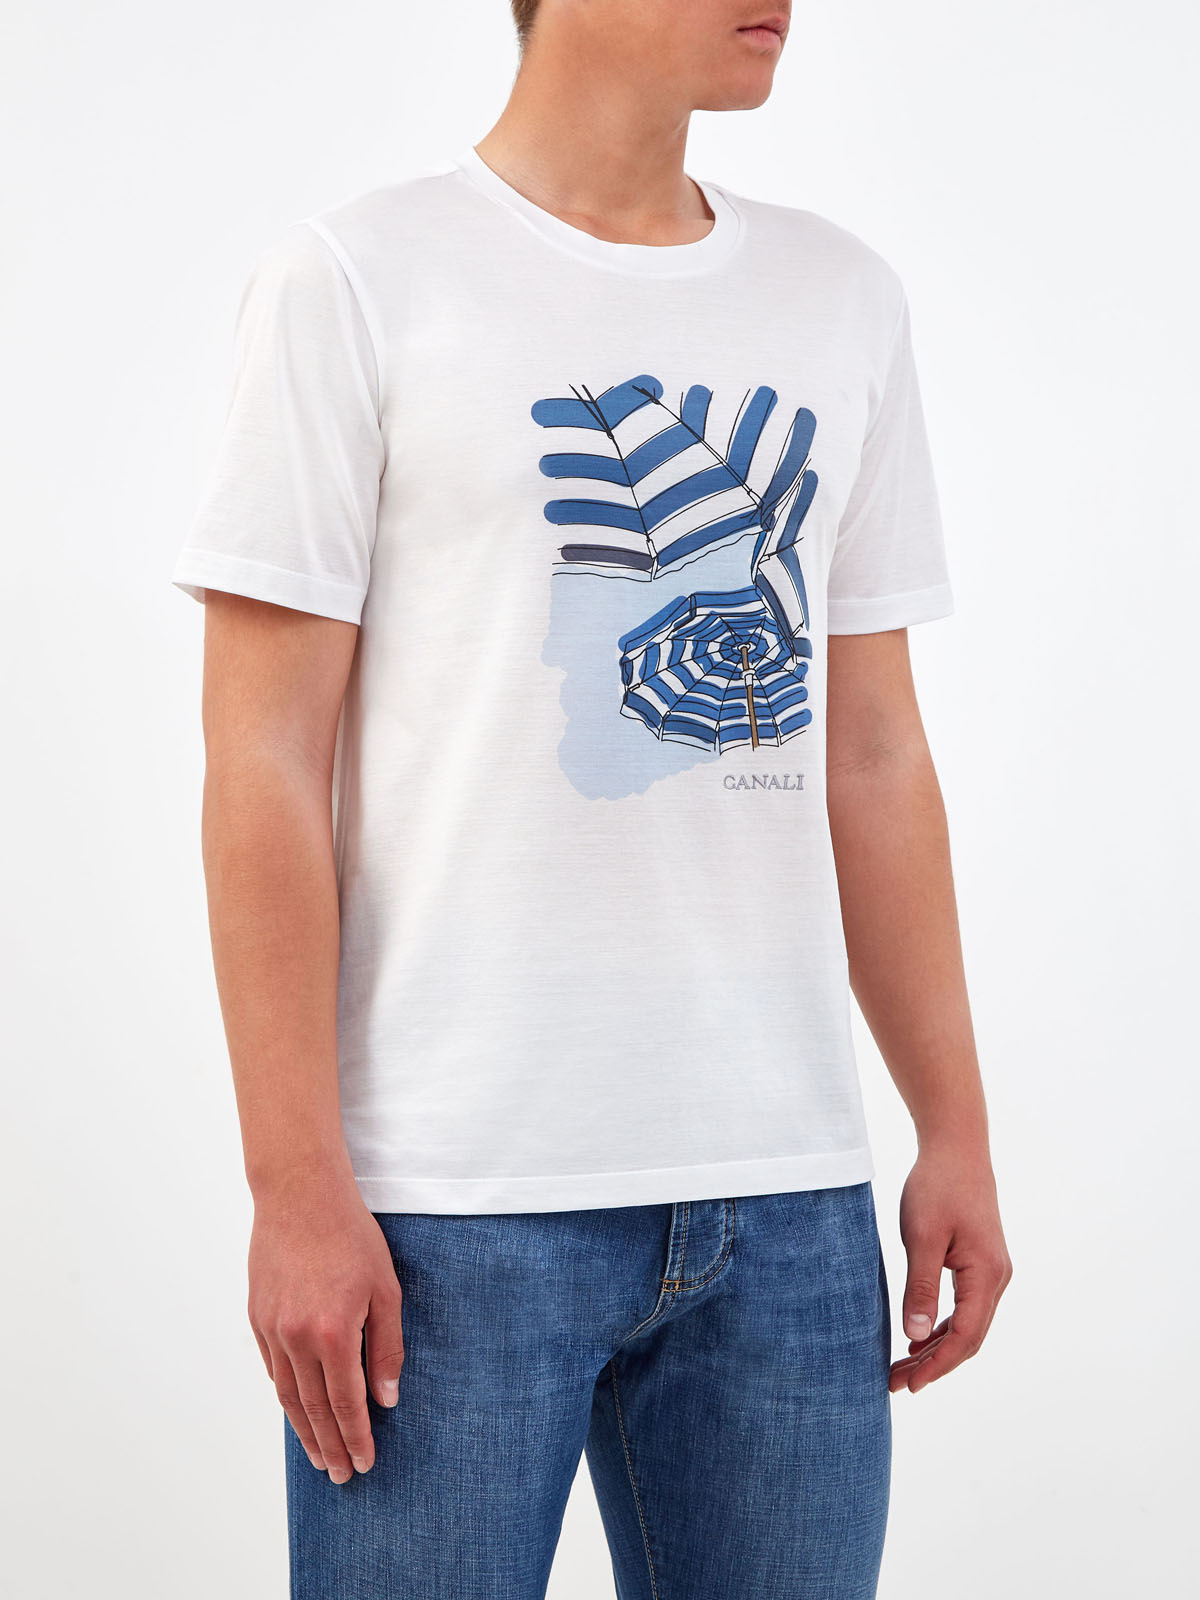 Хлопковая футболка с принтом и вышитым логотипом CANALI, цвет белый, размер 52;54;58;60;62;50 - фото 3